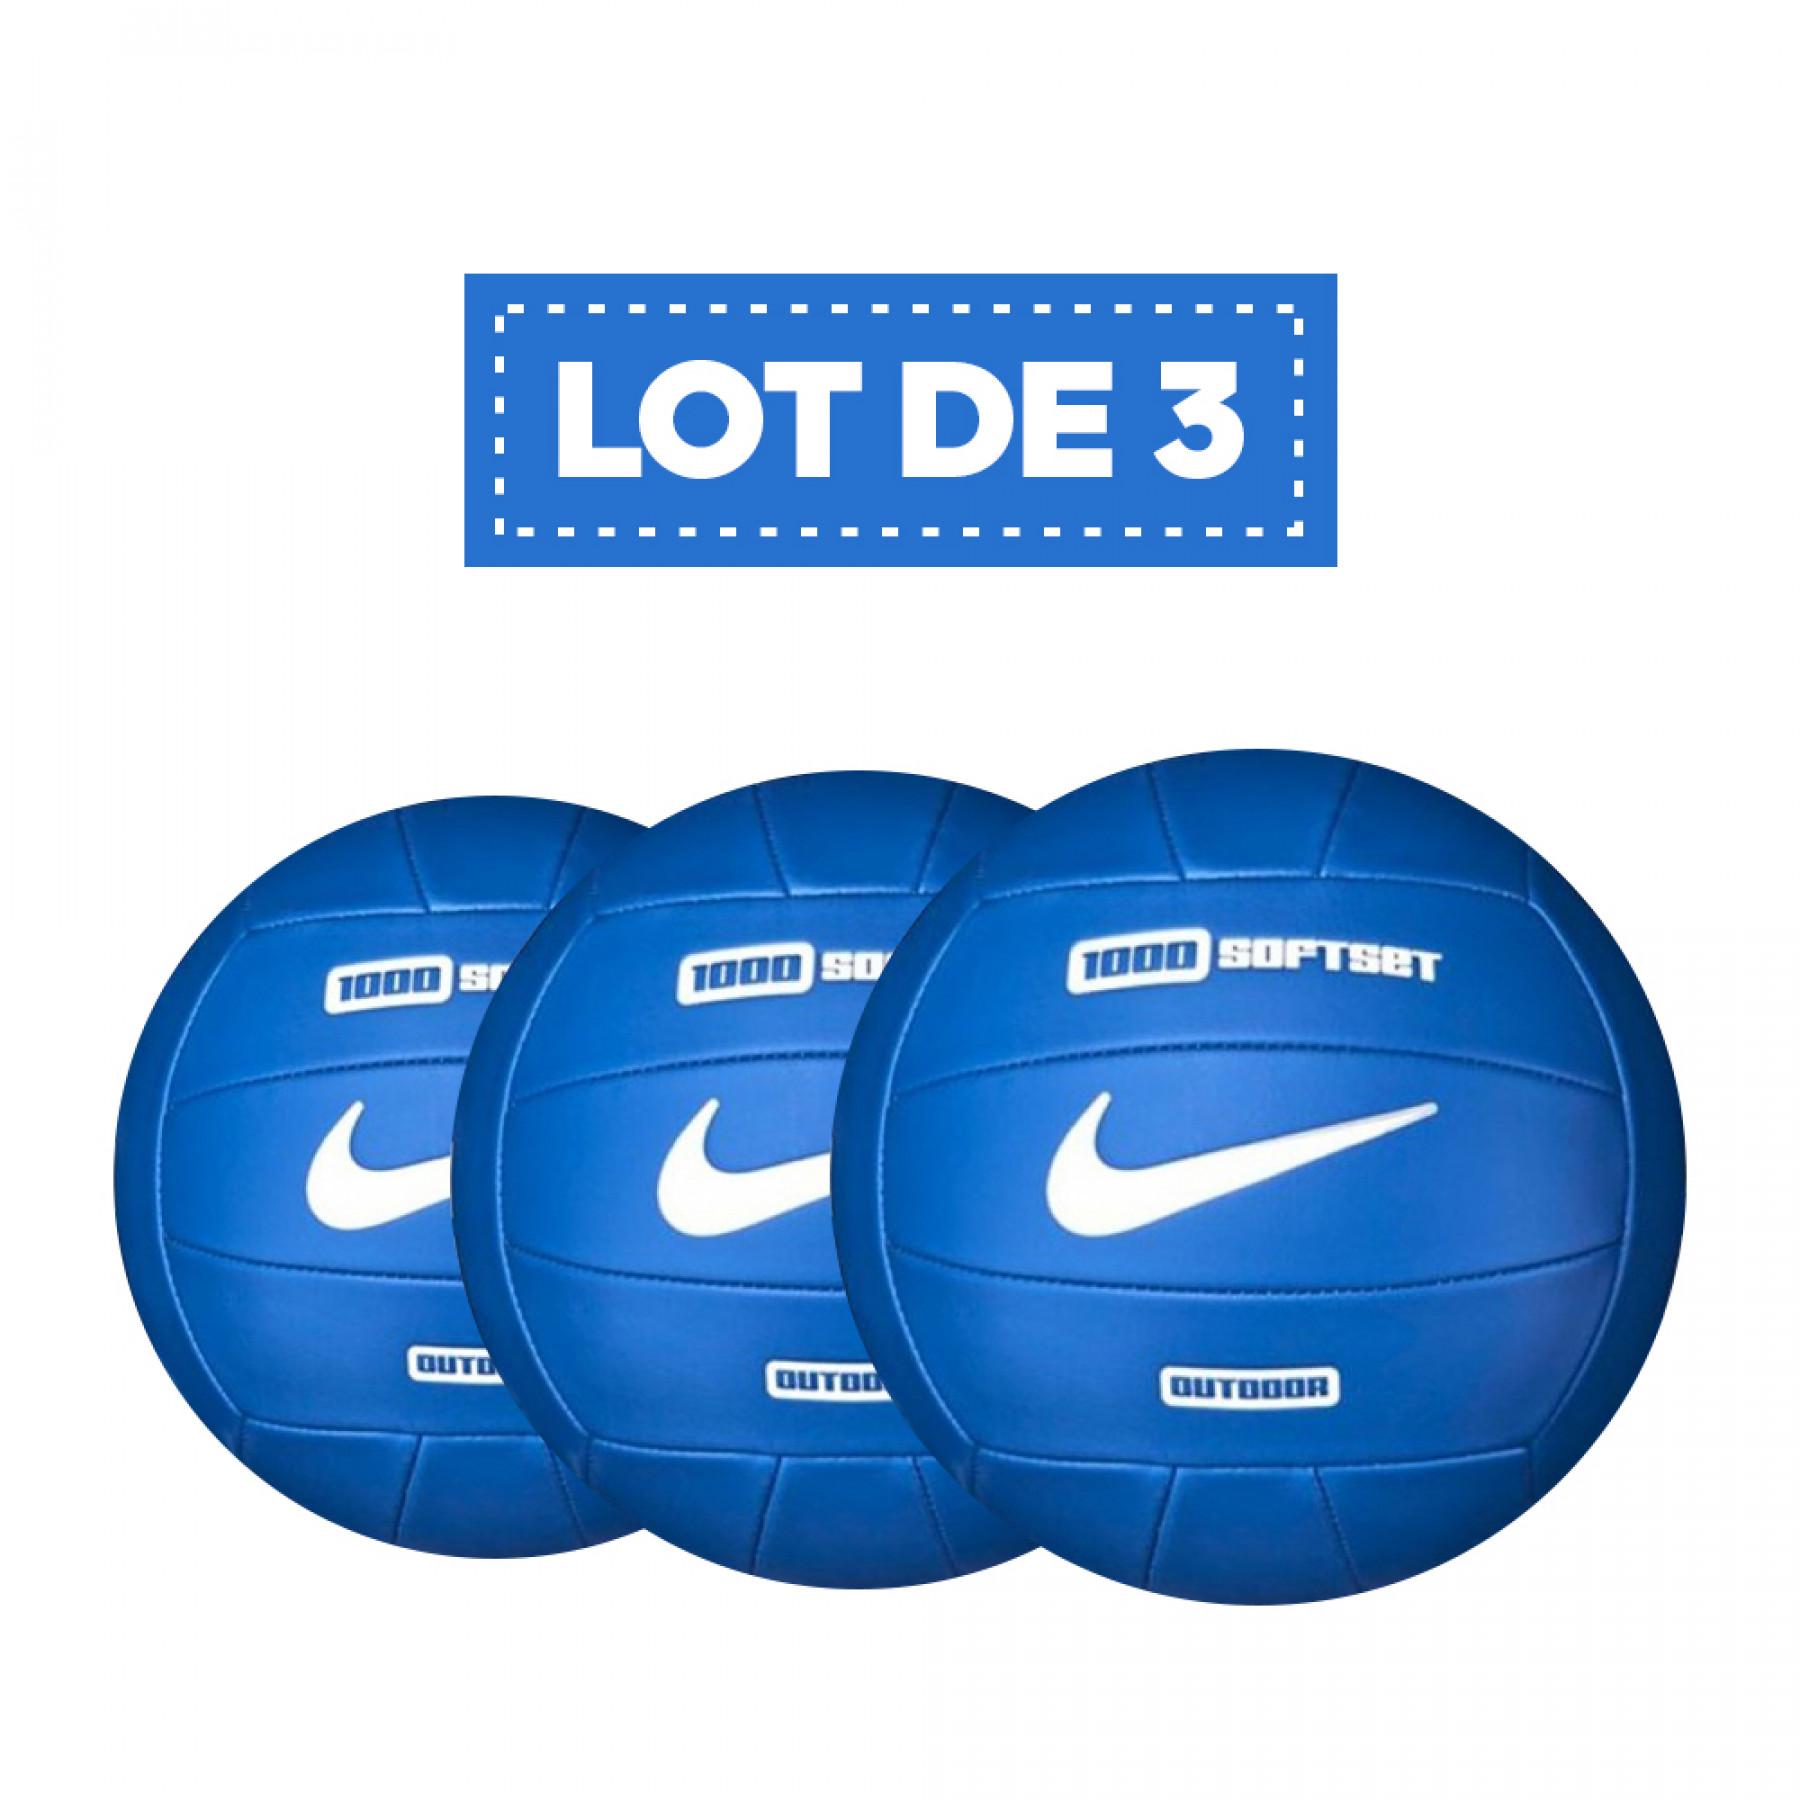 Juego de 3 globos Nike 1000 softset outdoor orange